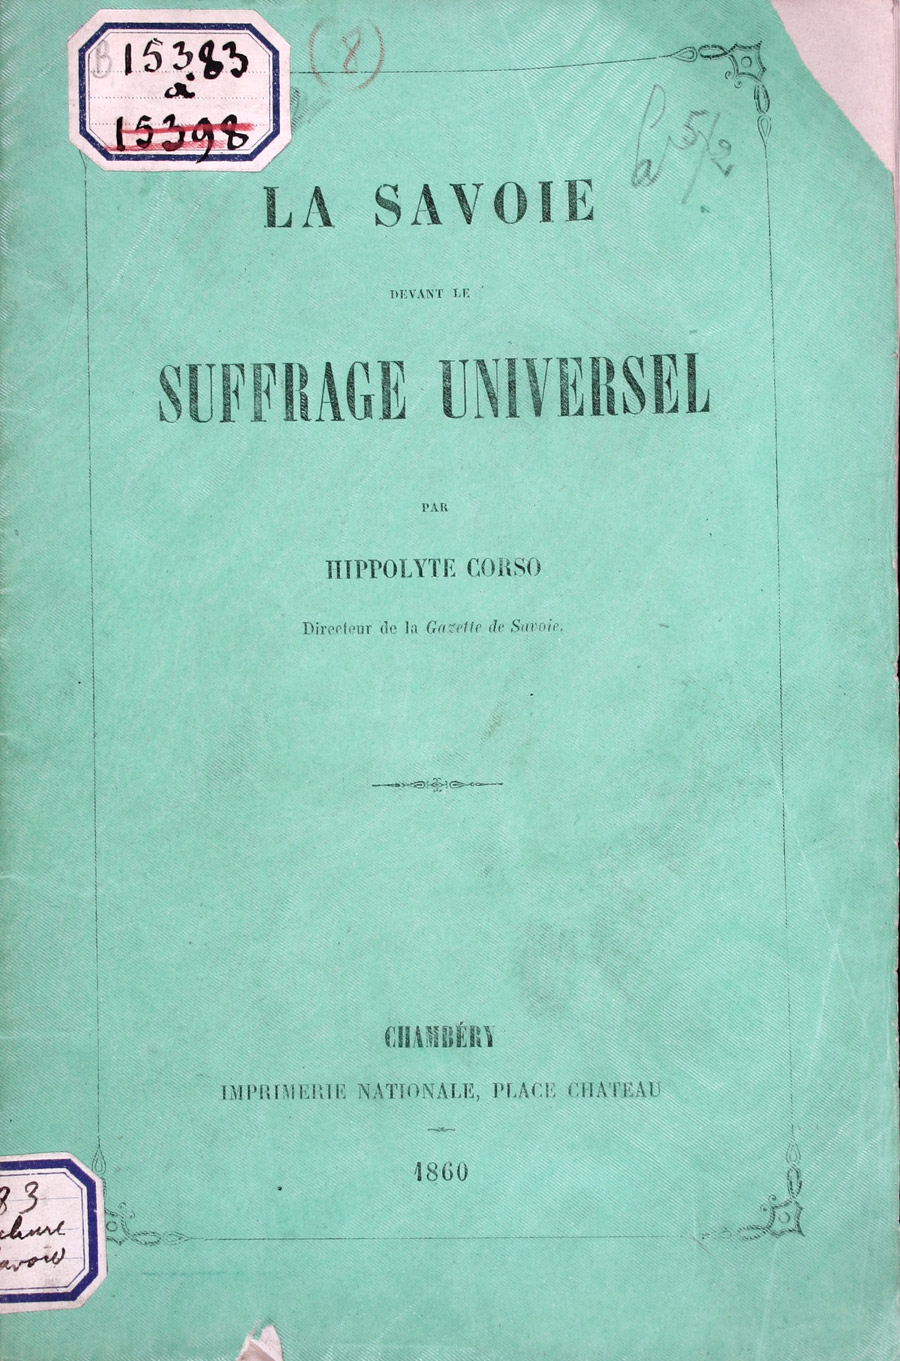 La Savoie devant le suffrage universel par Hippolyte Corso, 1860